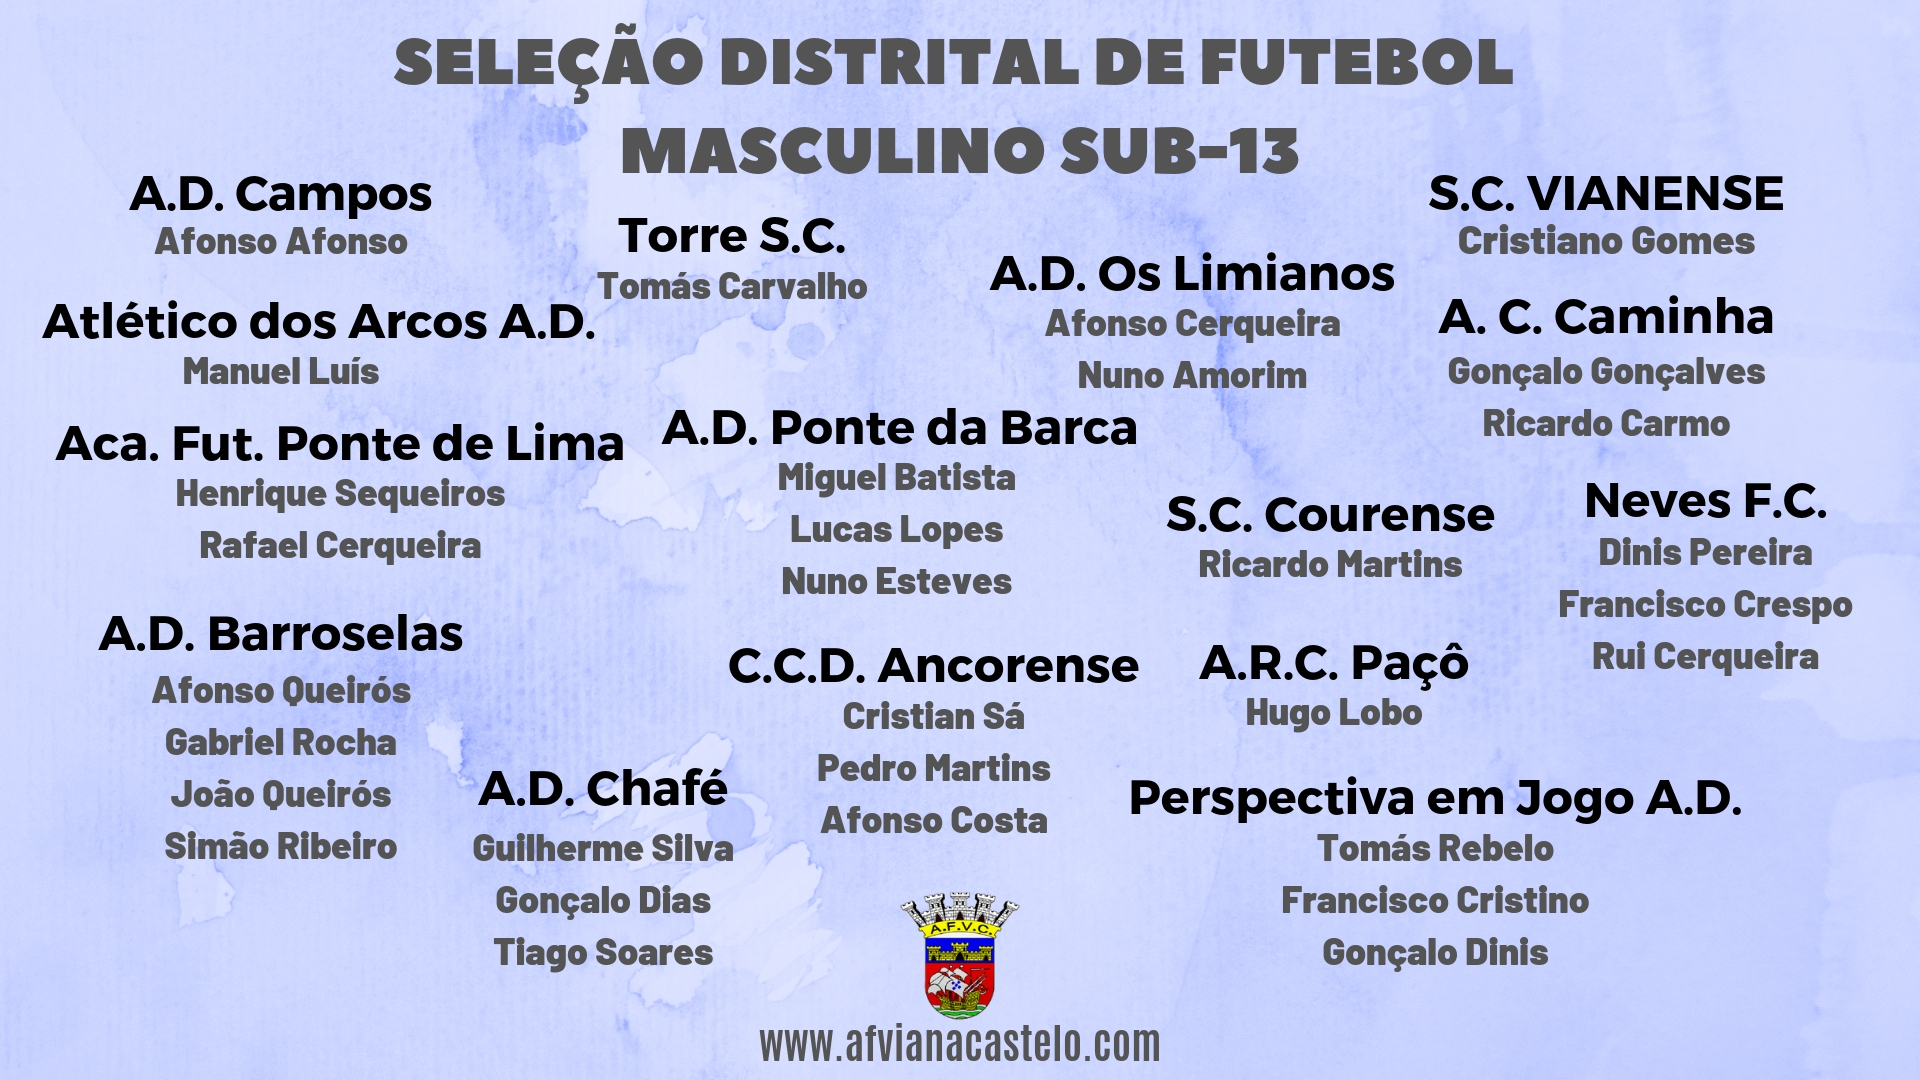 Seleção Distrital de Futebol Masculino Sub-13